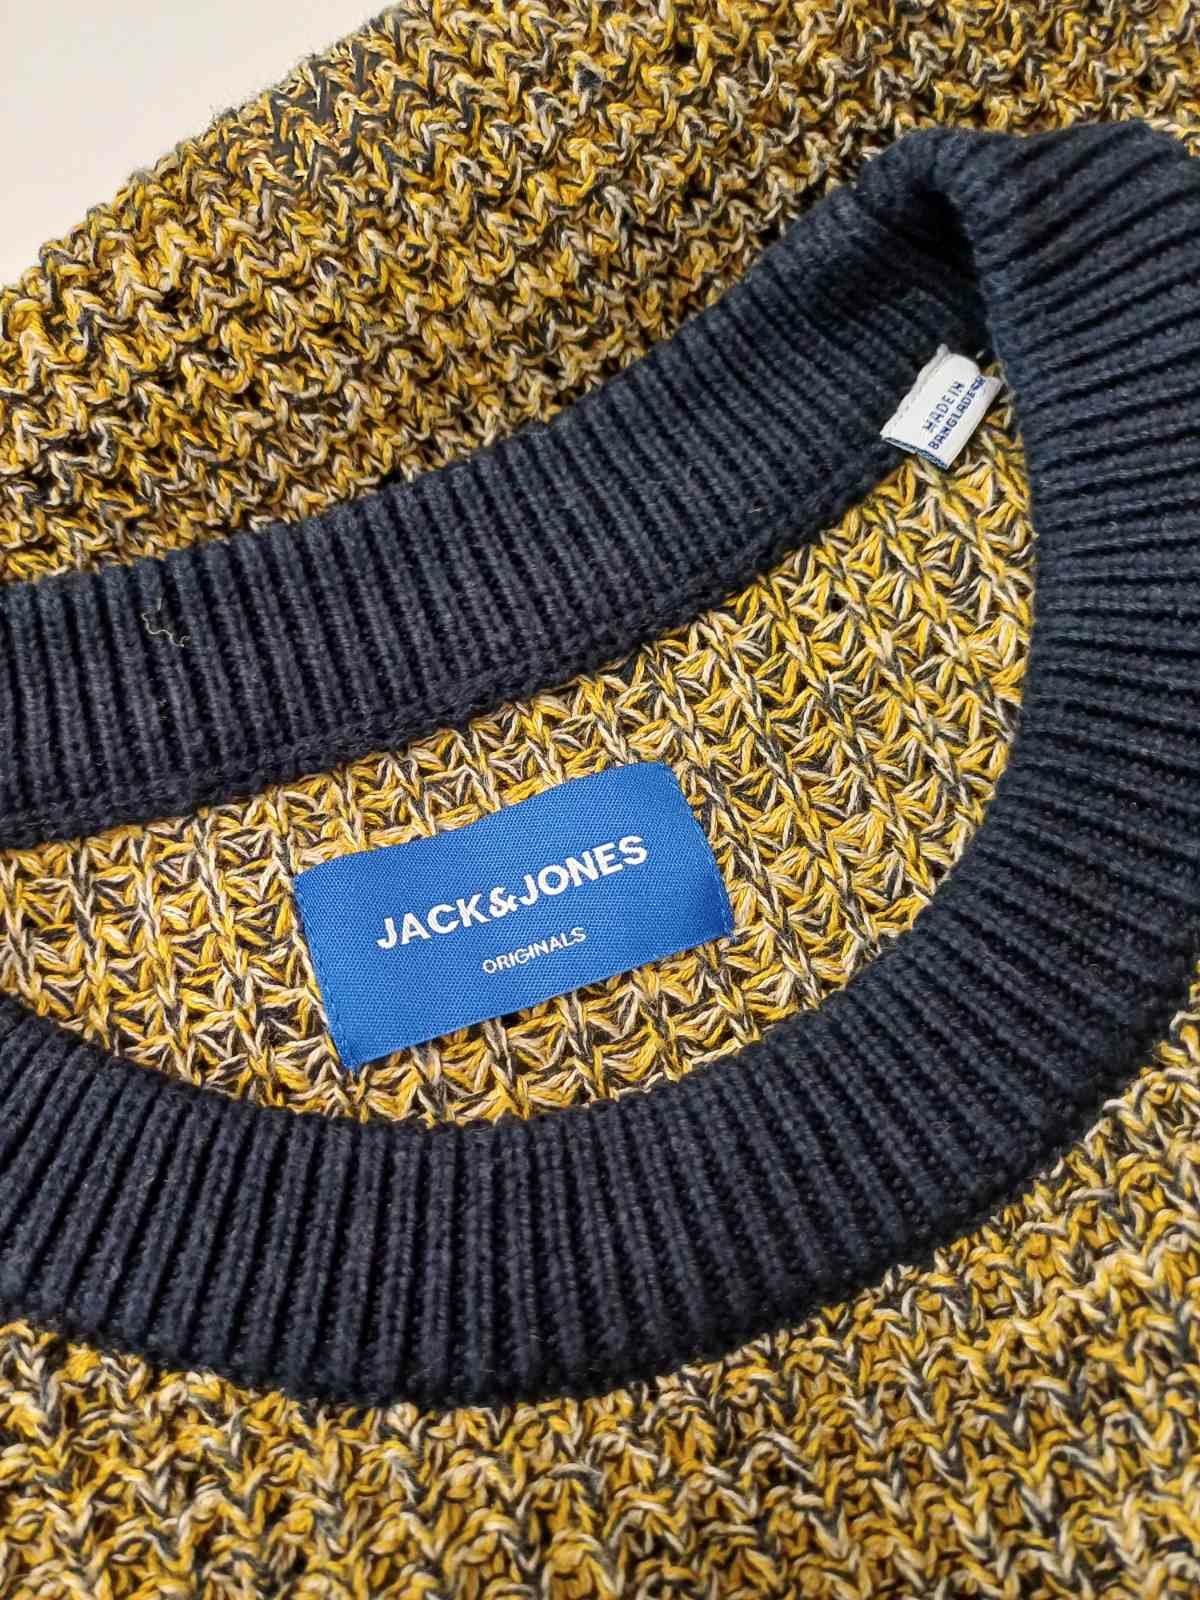 Męski sweterek bawełniany Jack & Jones rozm L/XL.